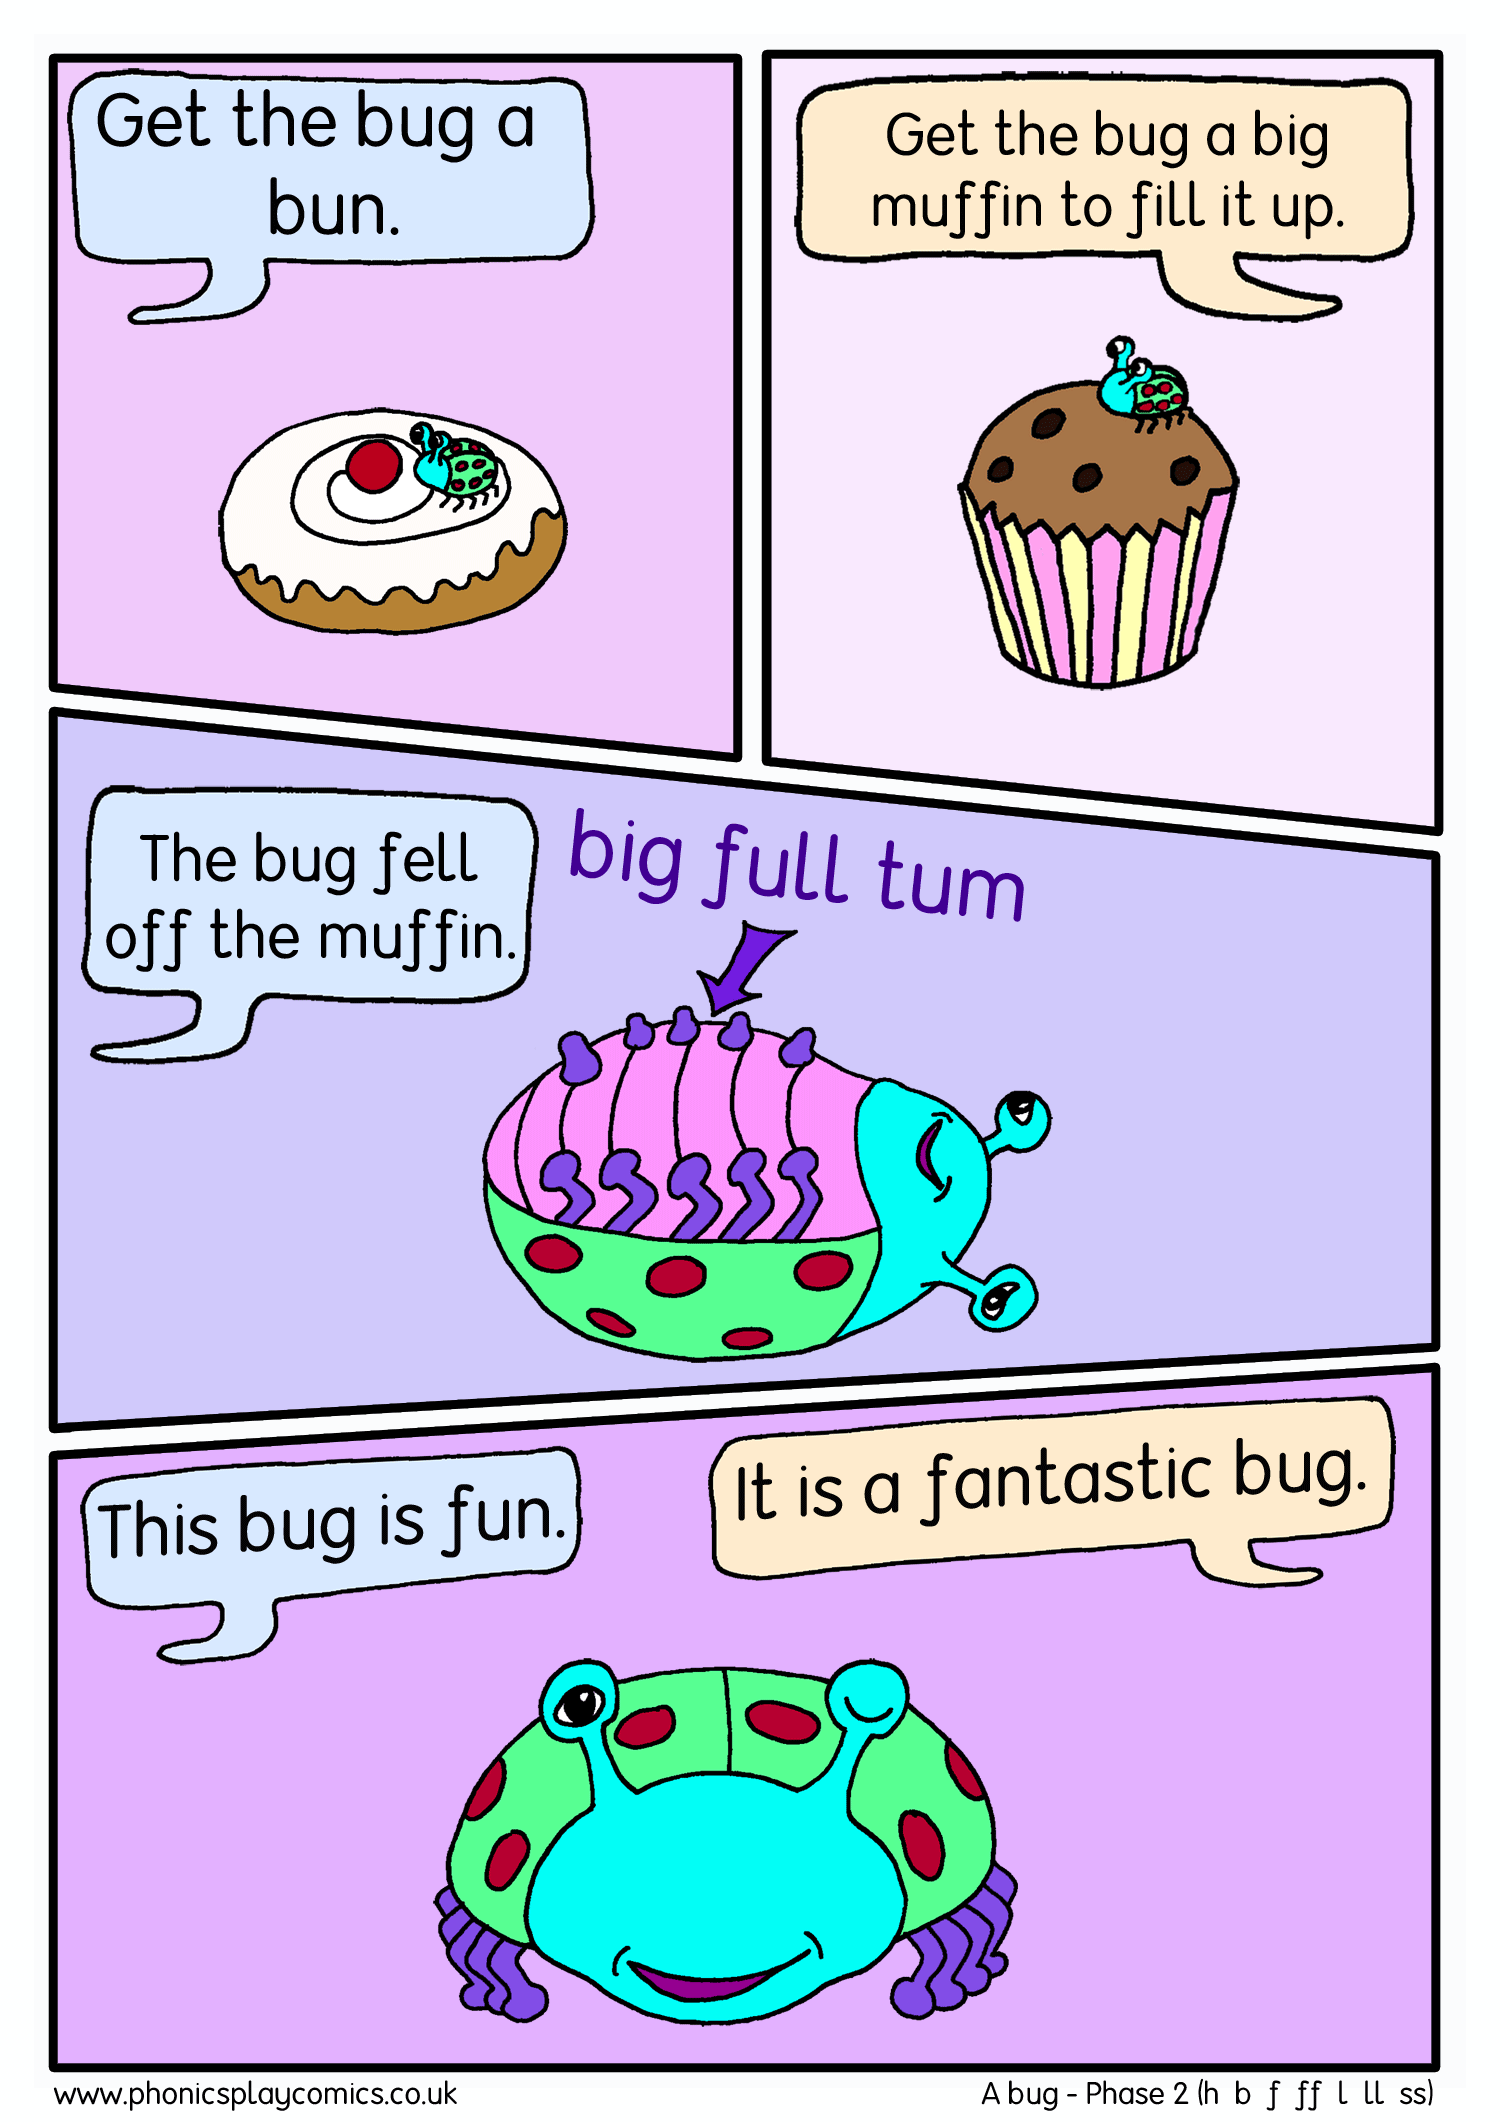 A bug comic panel2